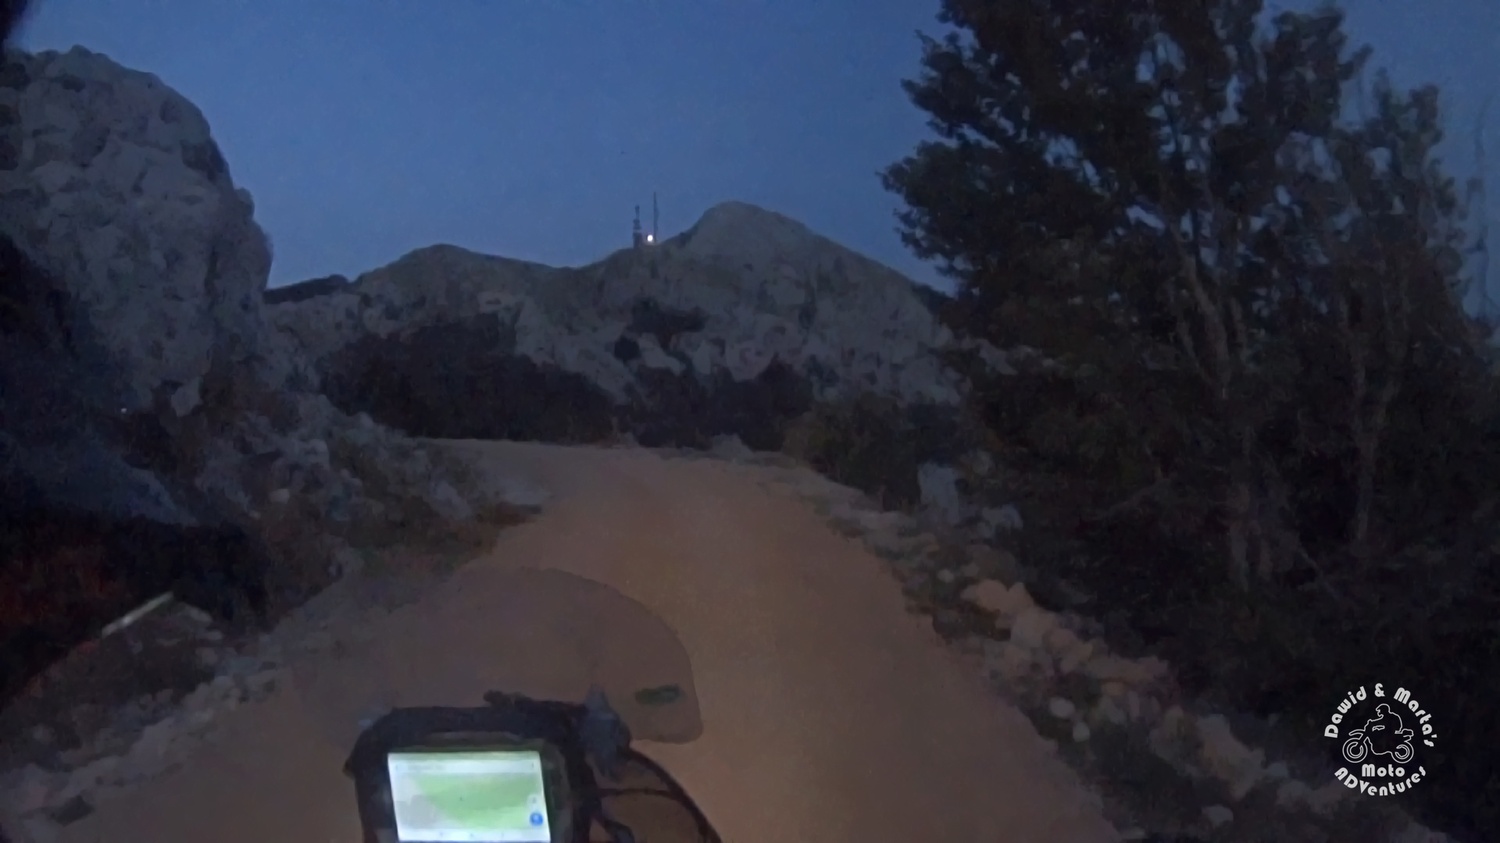 Riding motorbike up to Stirovnik mountain top at night